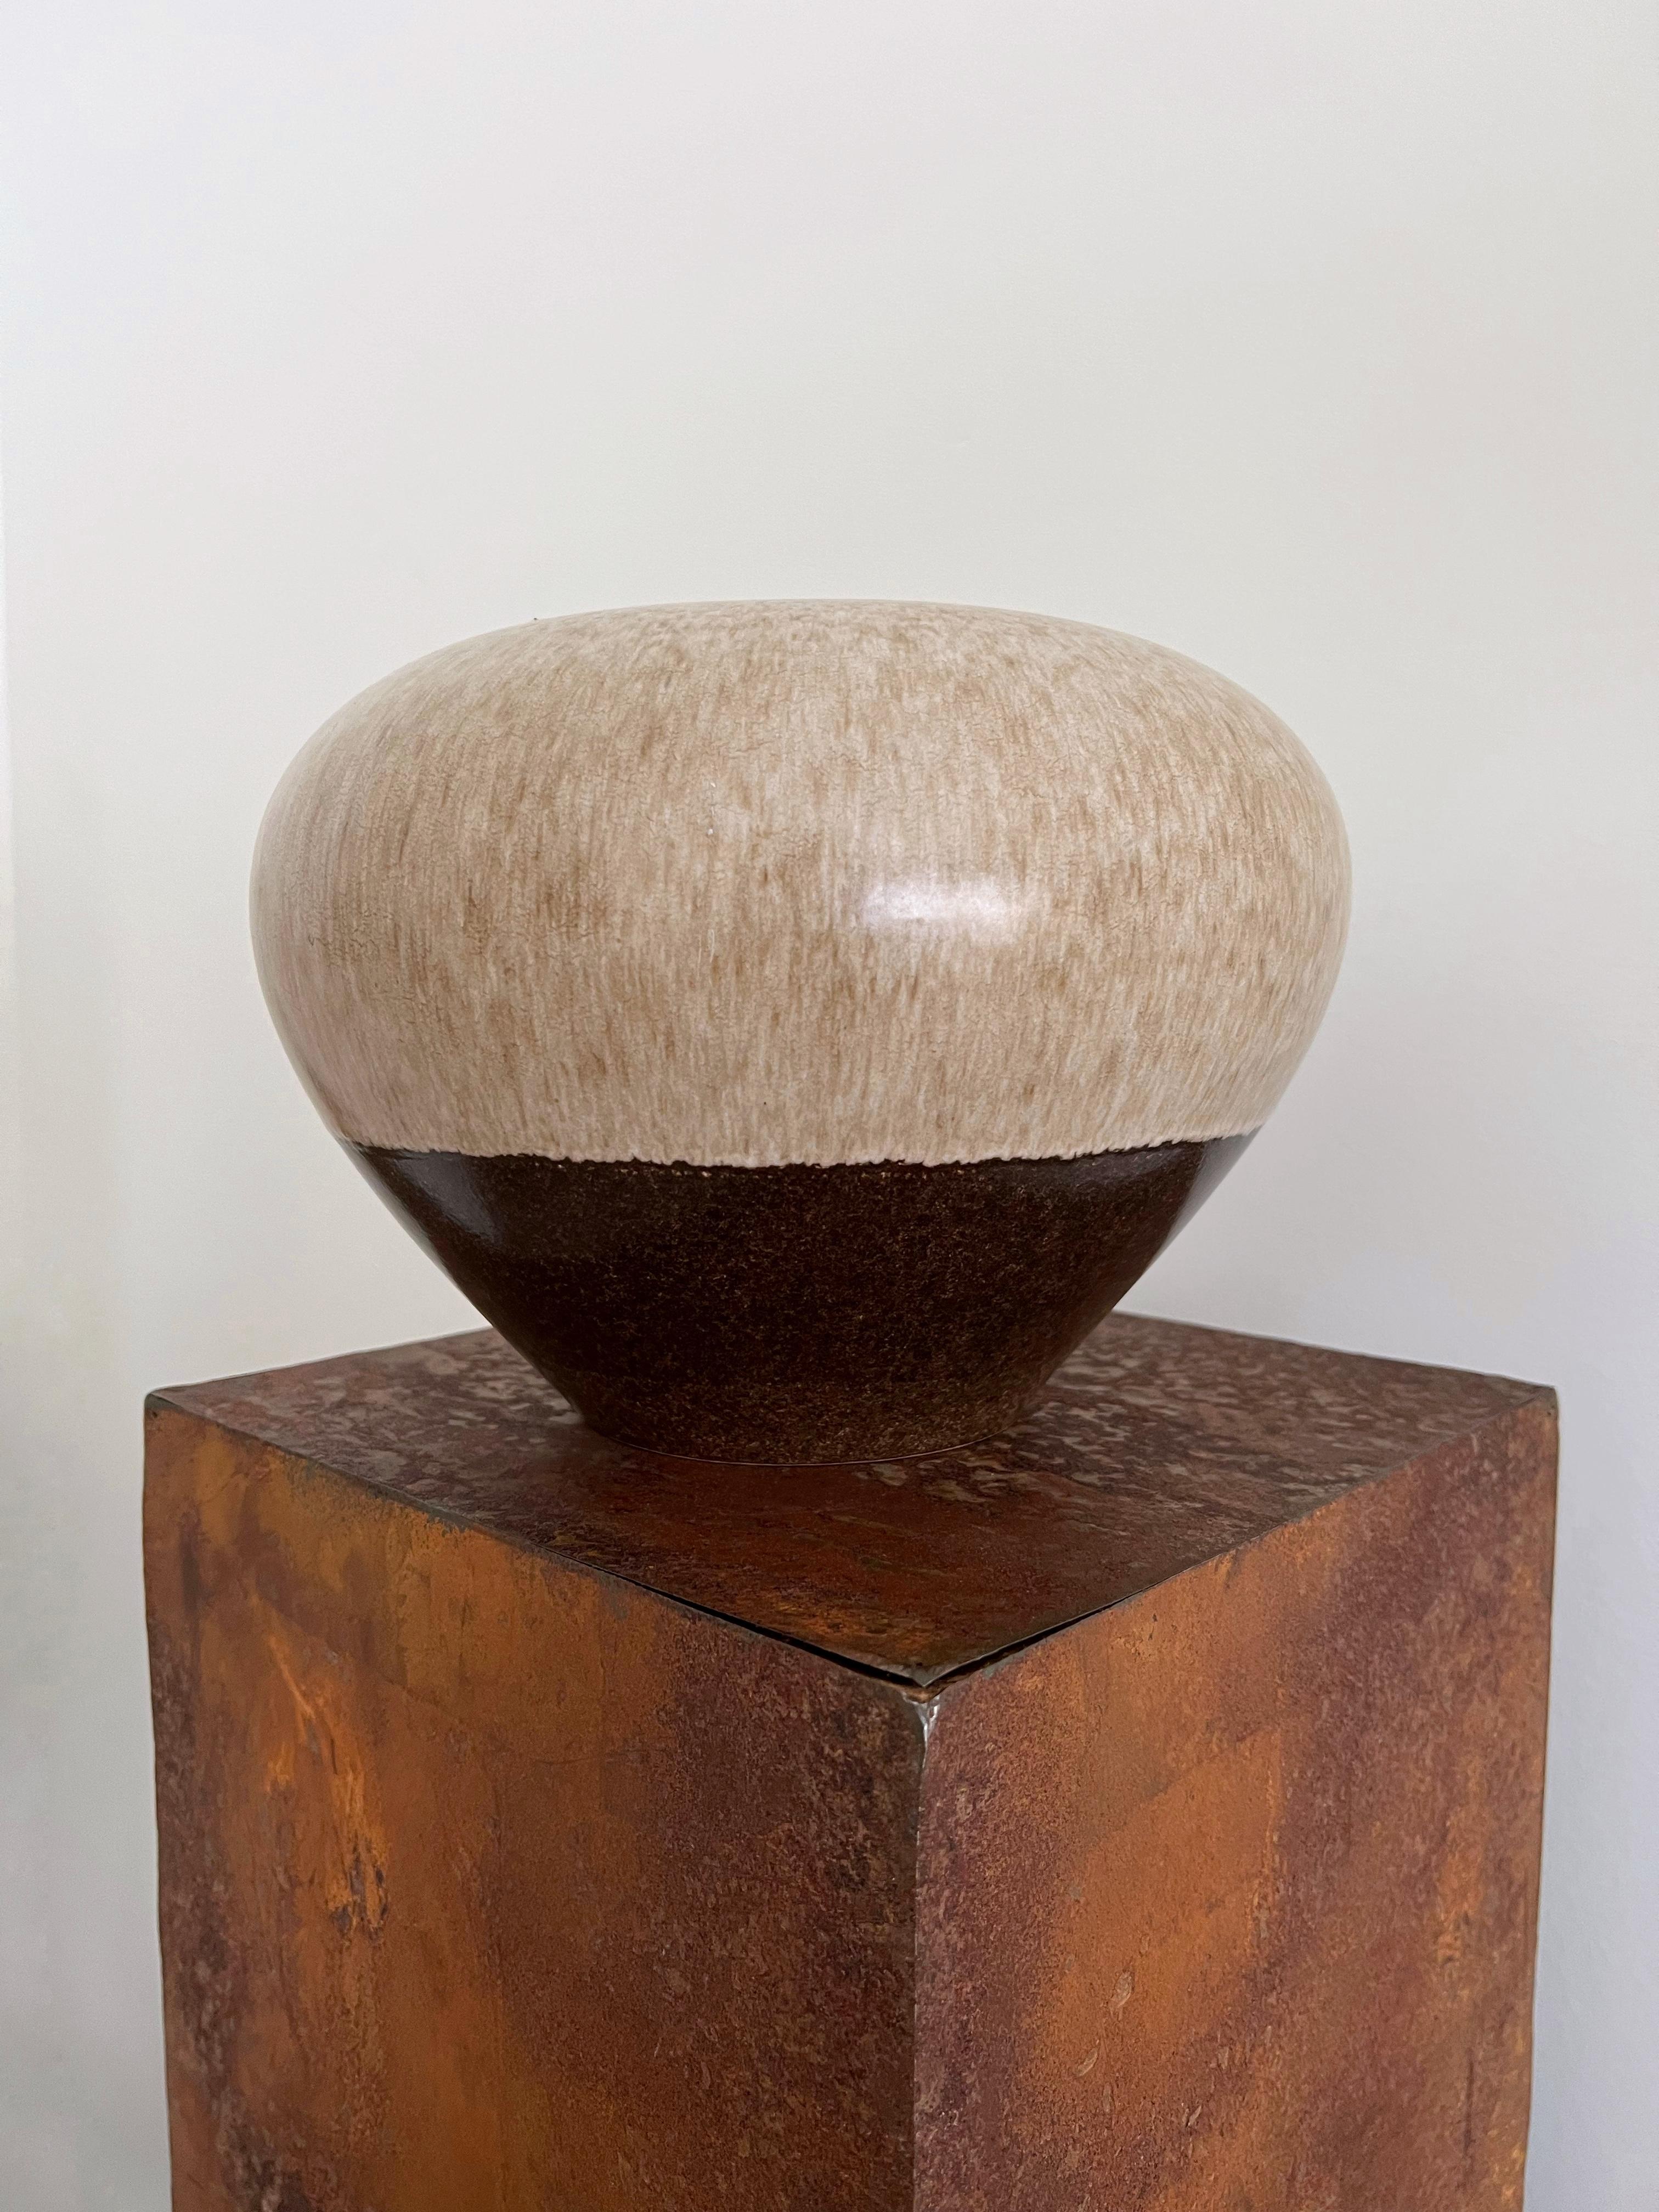 Vase en céramique Alvino Bagni pour Raymor composé de belles teintes brunes, beiges, terreuses. De forme organique et magnifiquement travaillée, cette pièce s'intègre dans pratiquement tous les intérieurs. Le vase est en très bon état et ne présente